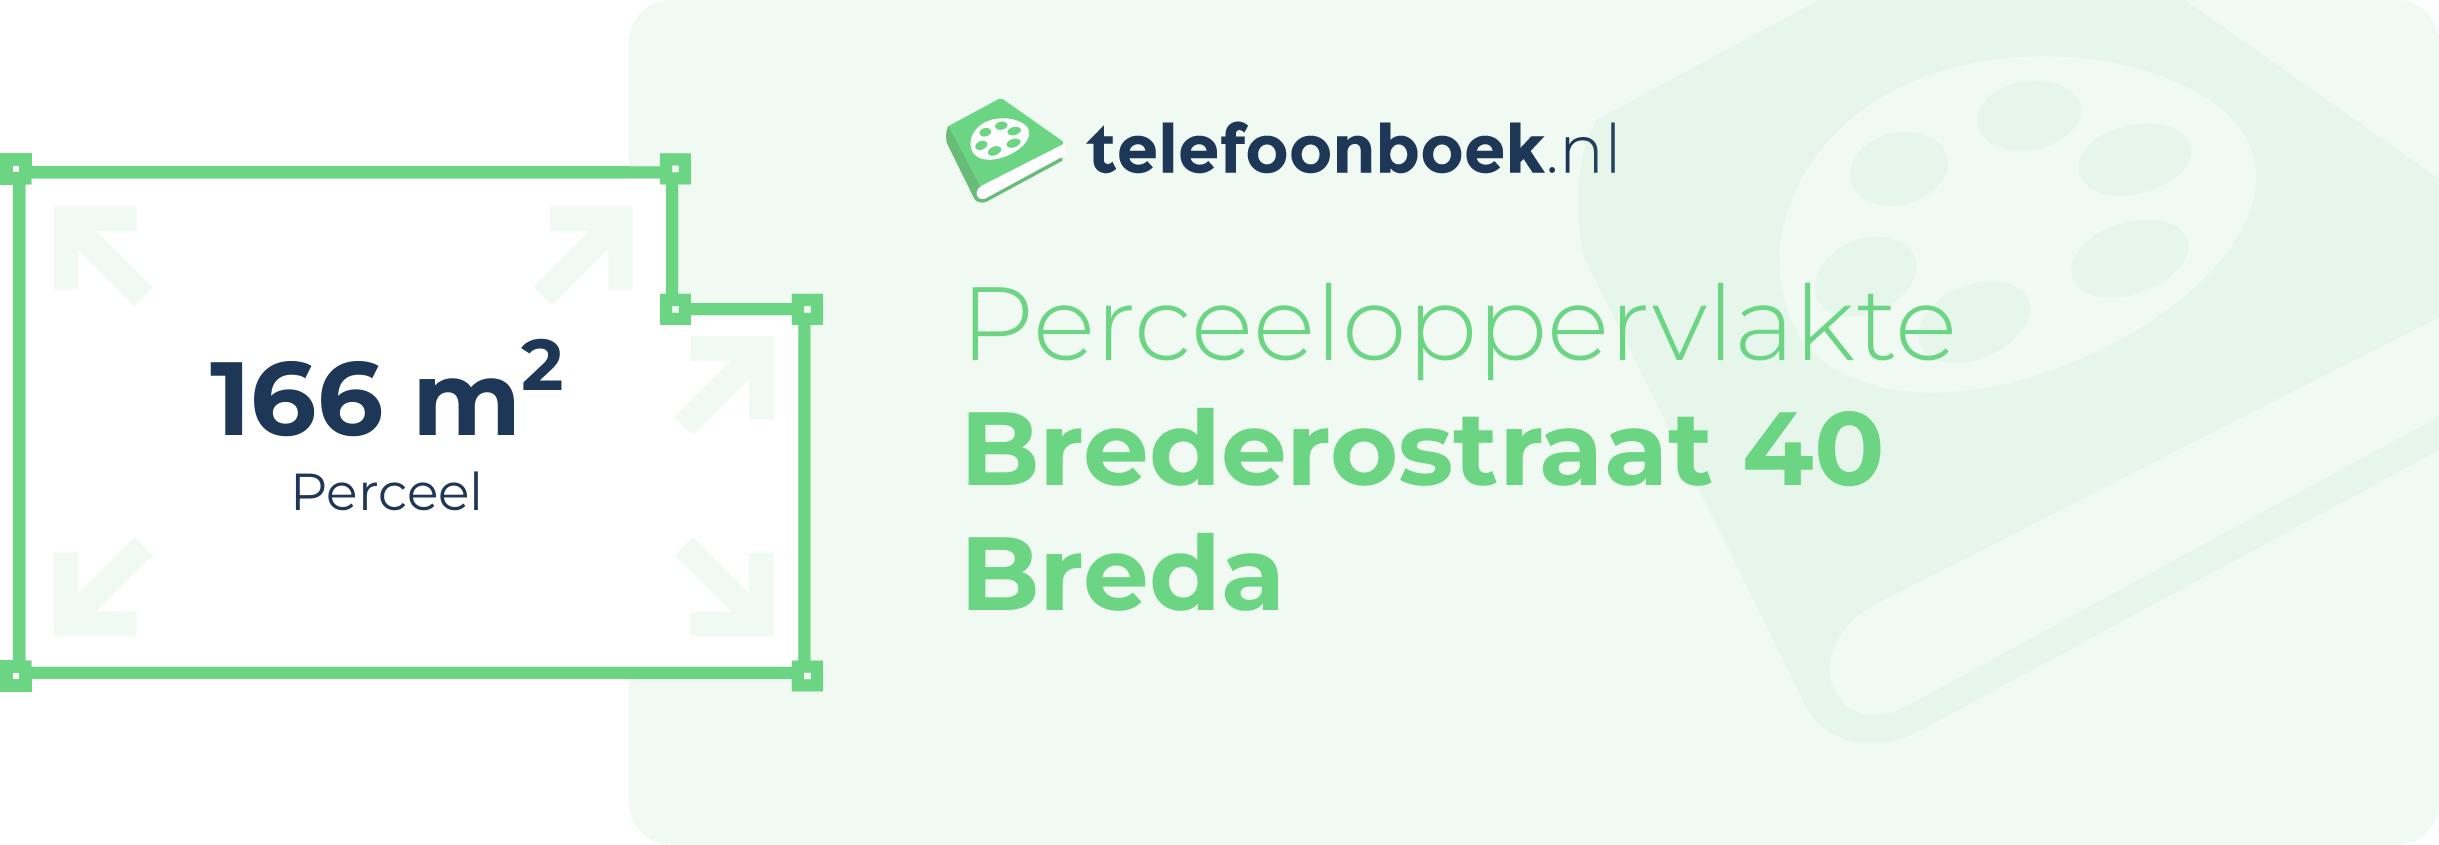 Perceeloppervlakte Brederostraat 40 Breda